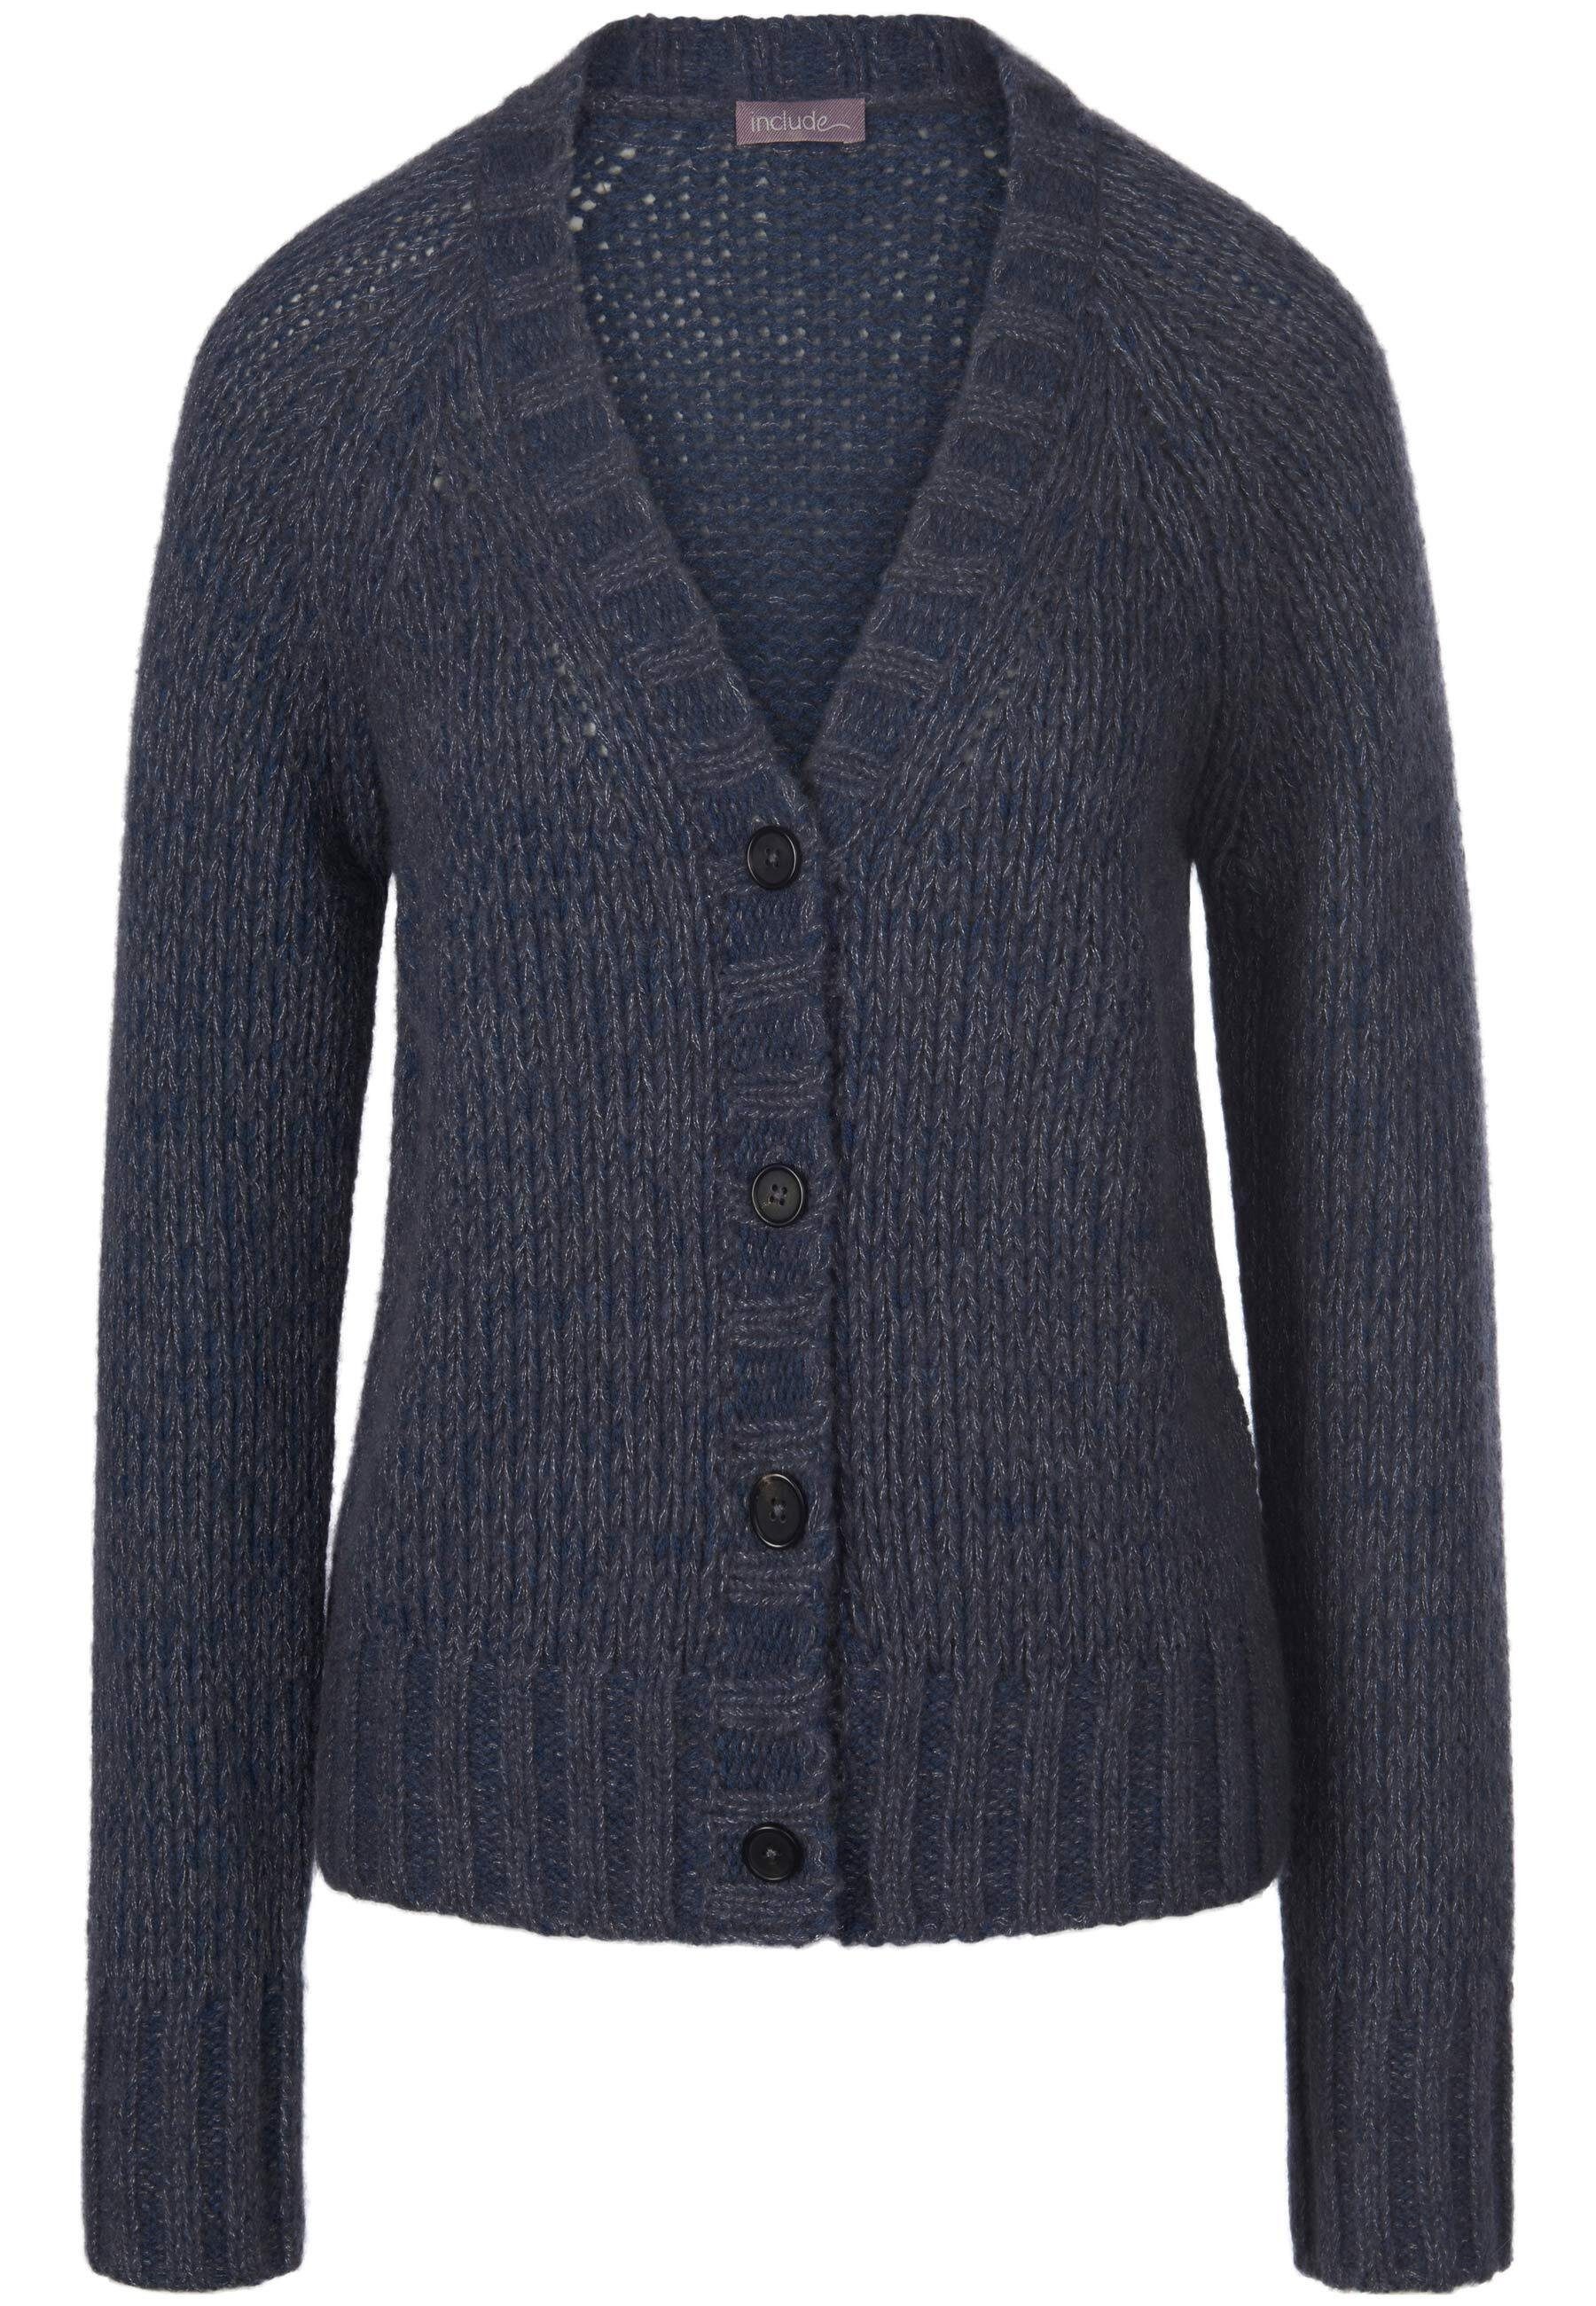 Strickjacke include jeansblau-melange wool